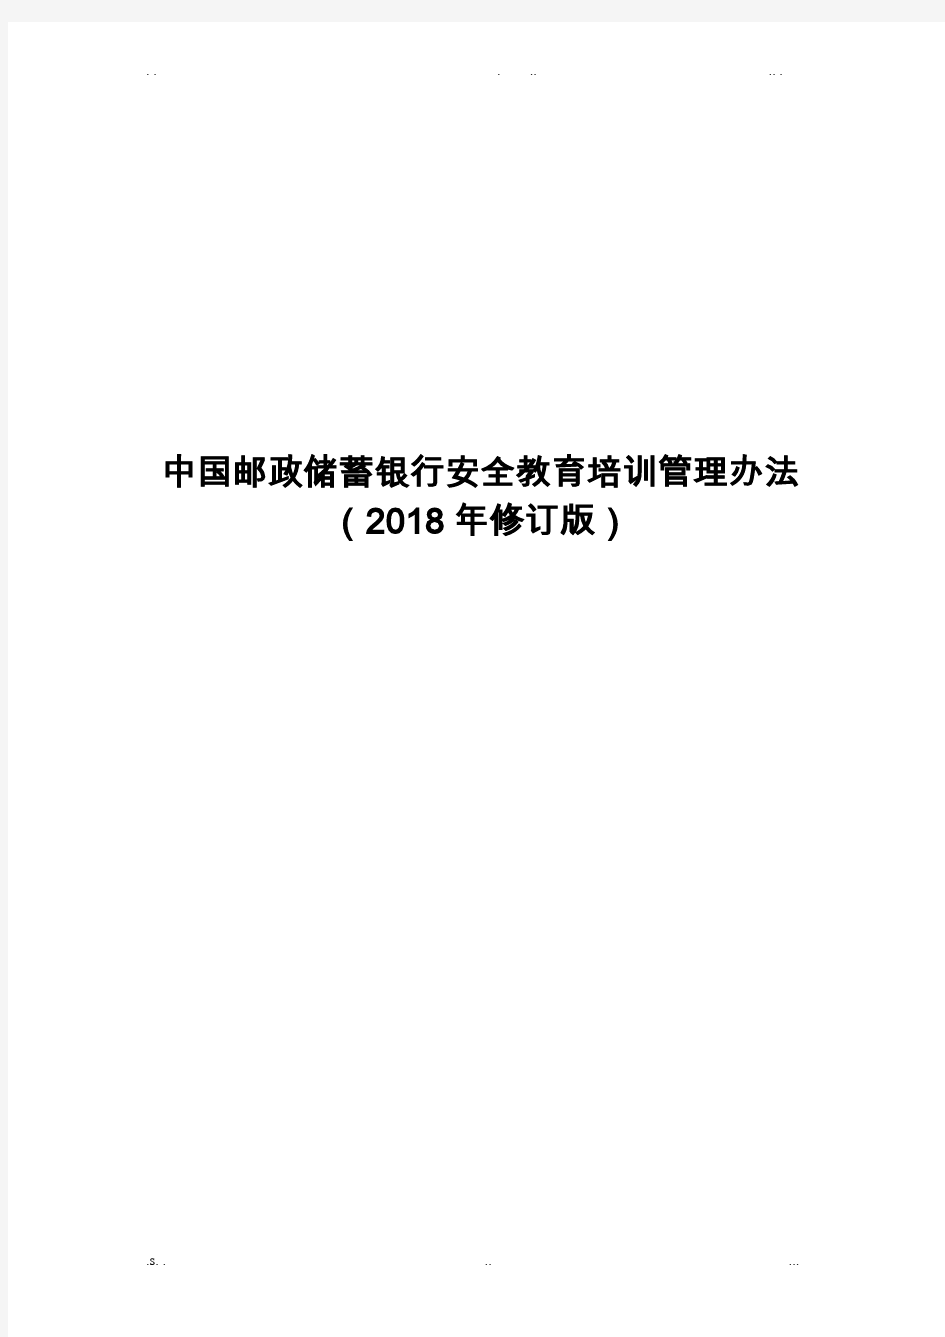 中国邮政储蓄银行安全教育培训管理办法(2018年修订版)